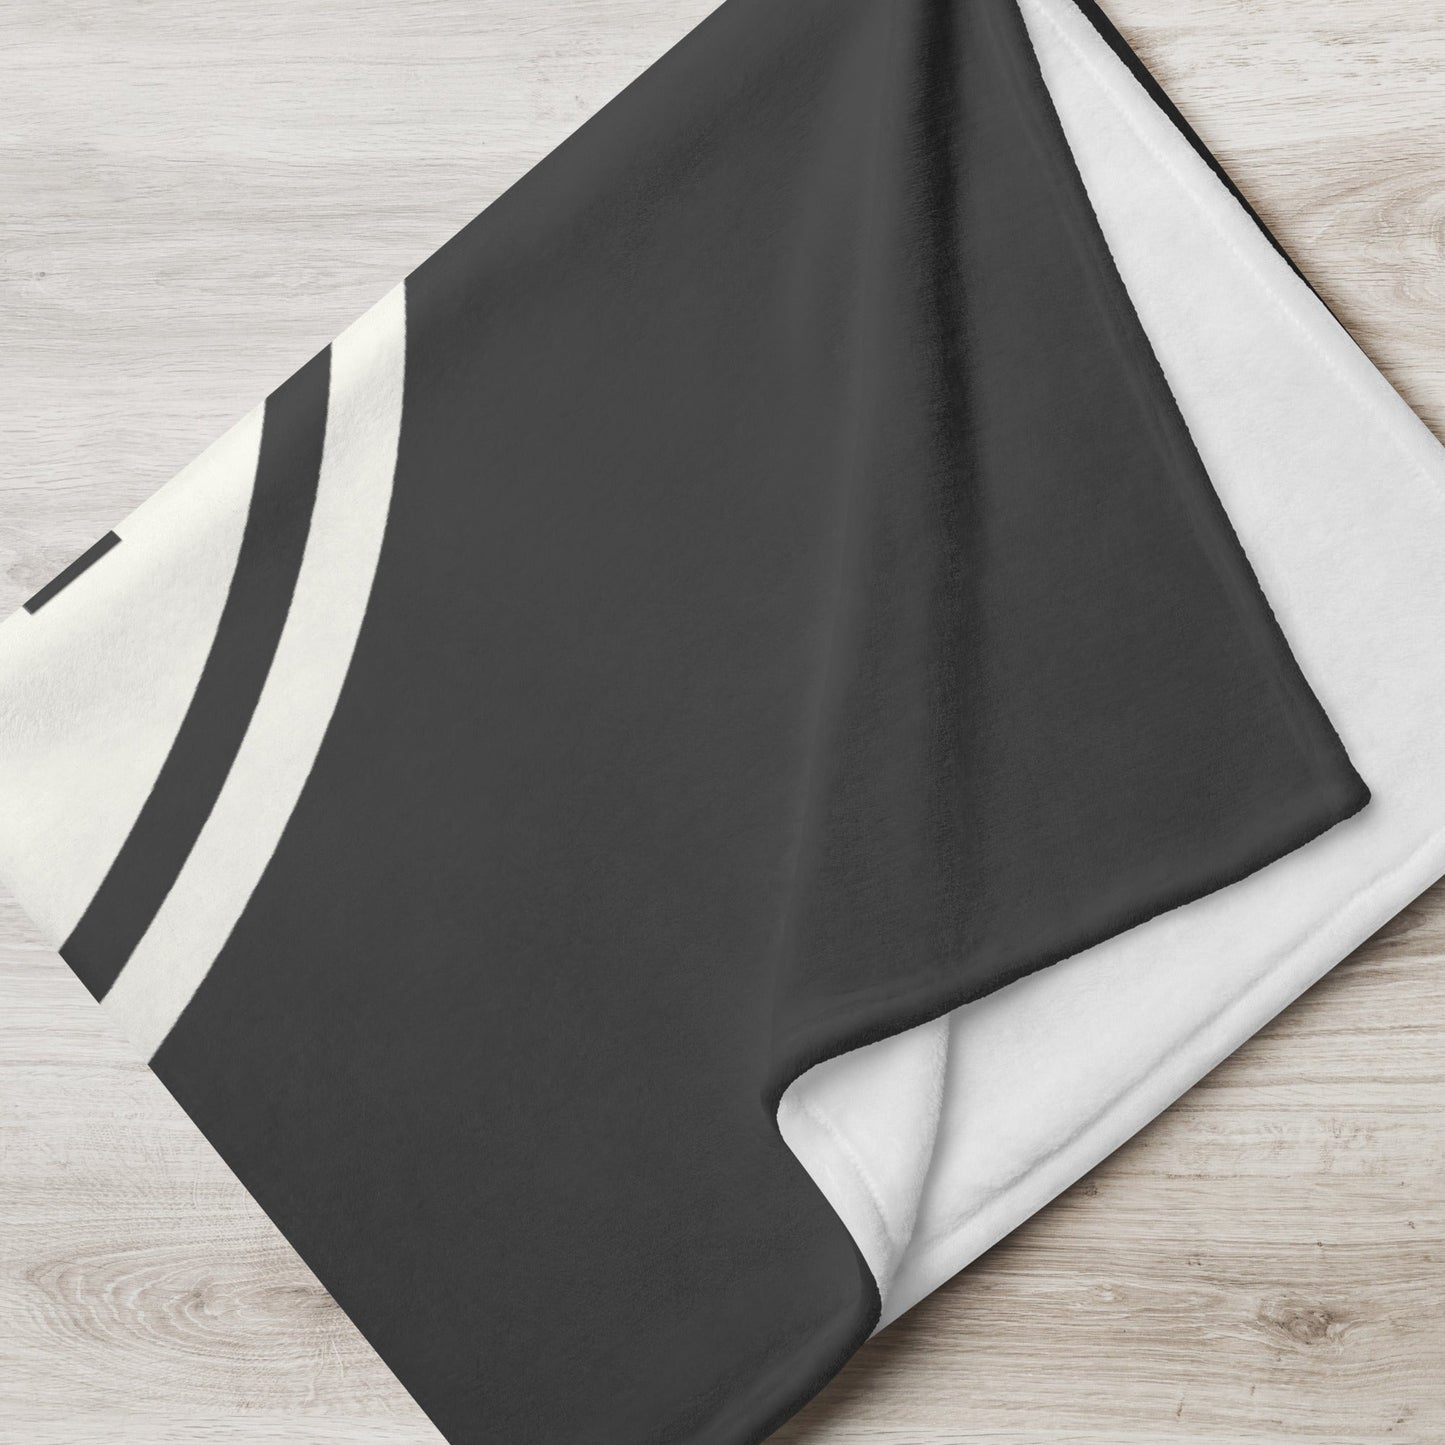 Unique Travel Gift Throw Blanket - White Oval • ZRH Zurich • YHM Designs - Image 05